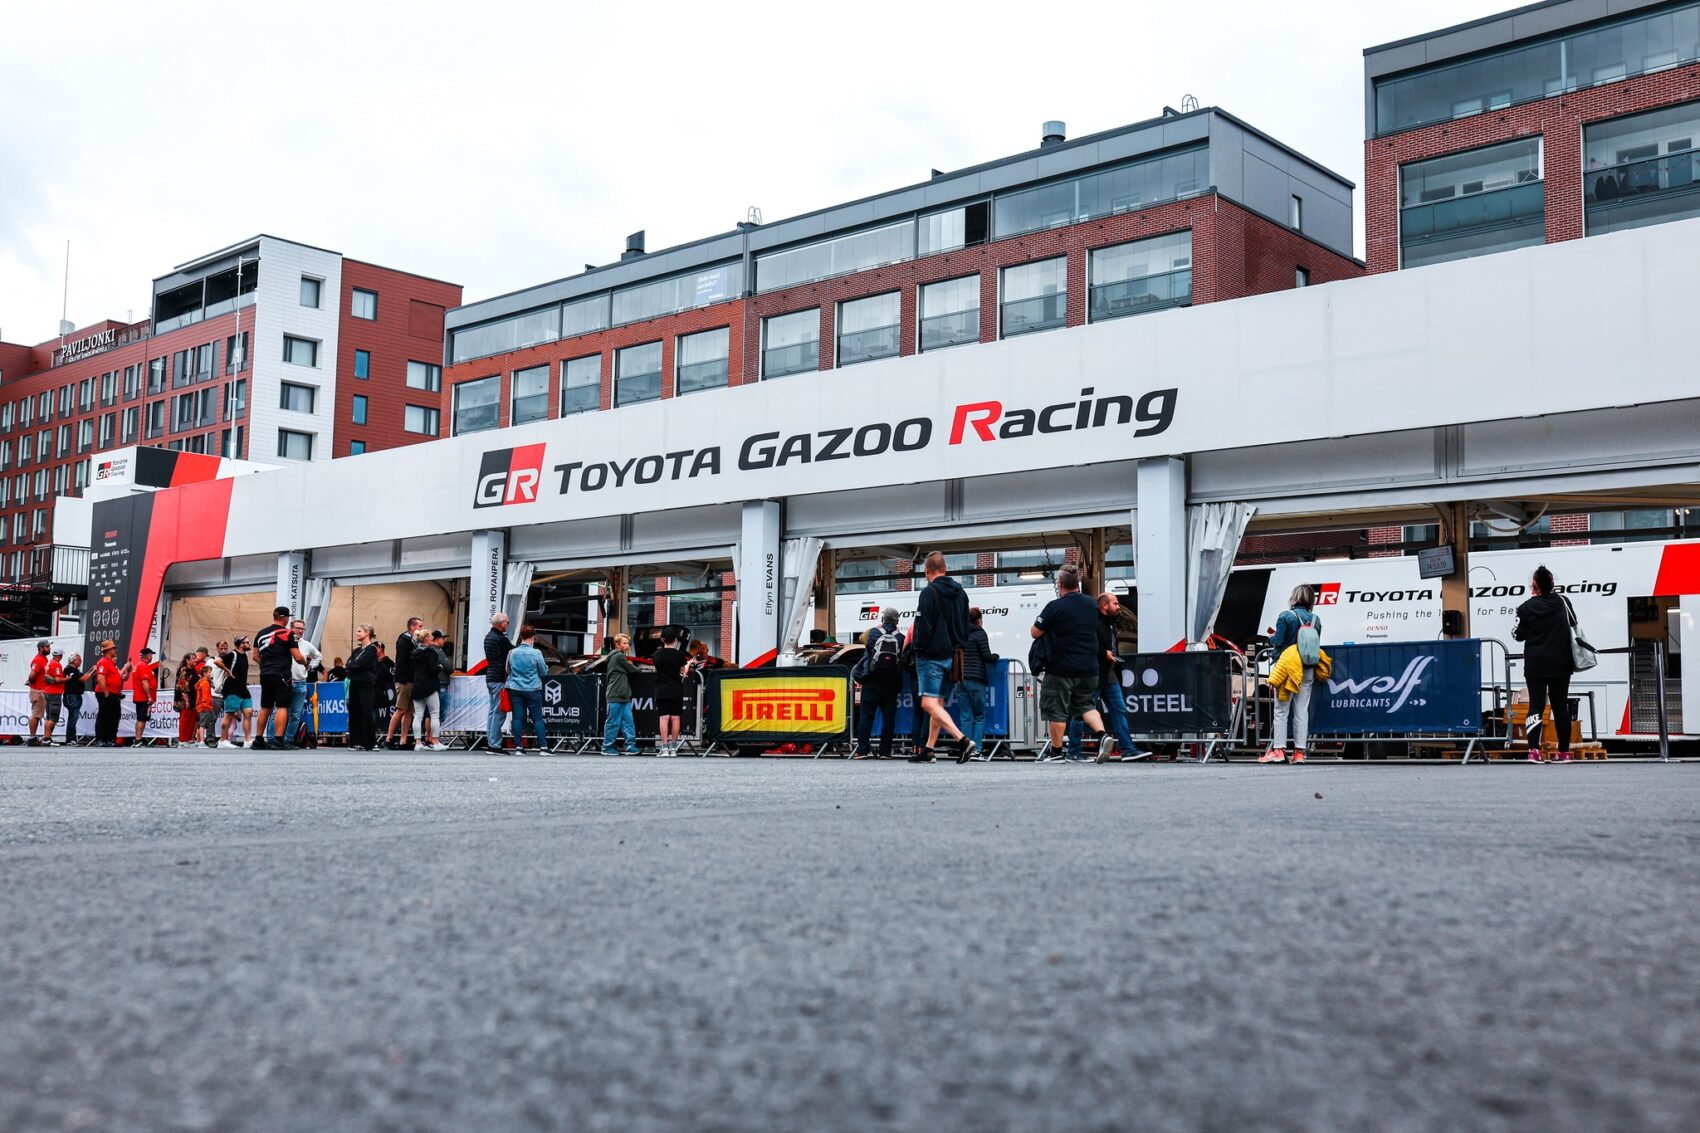 Toyota Gazoo Racing